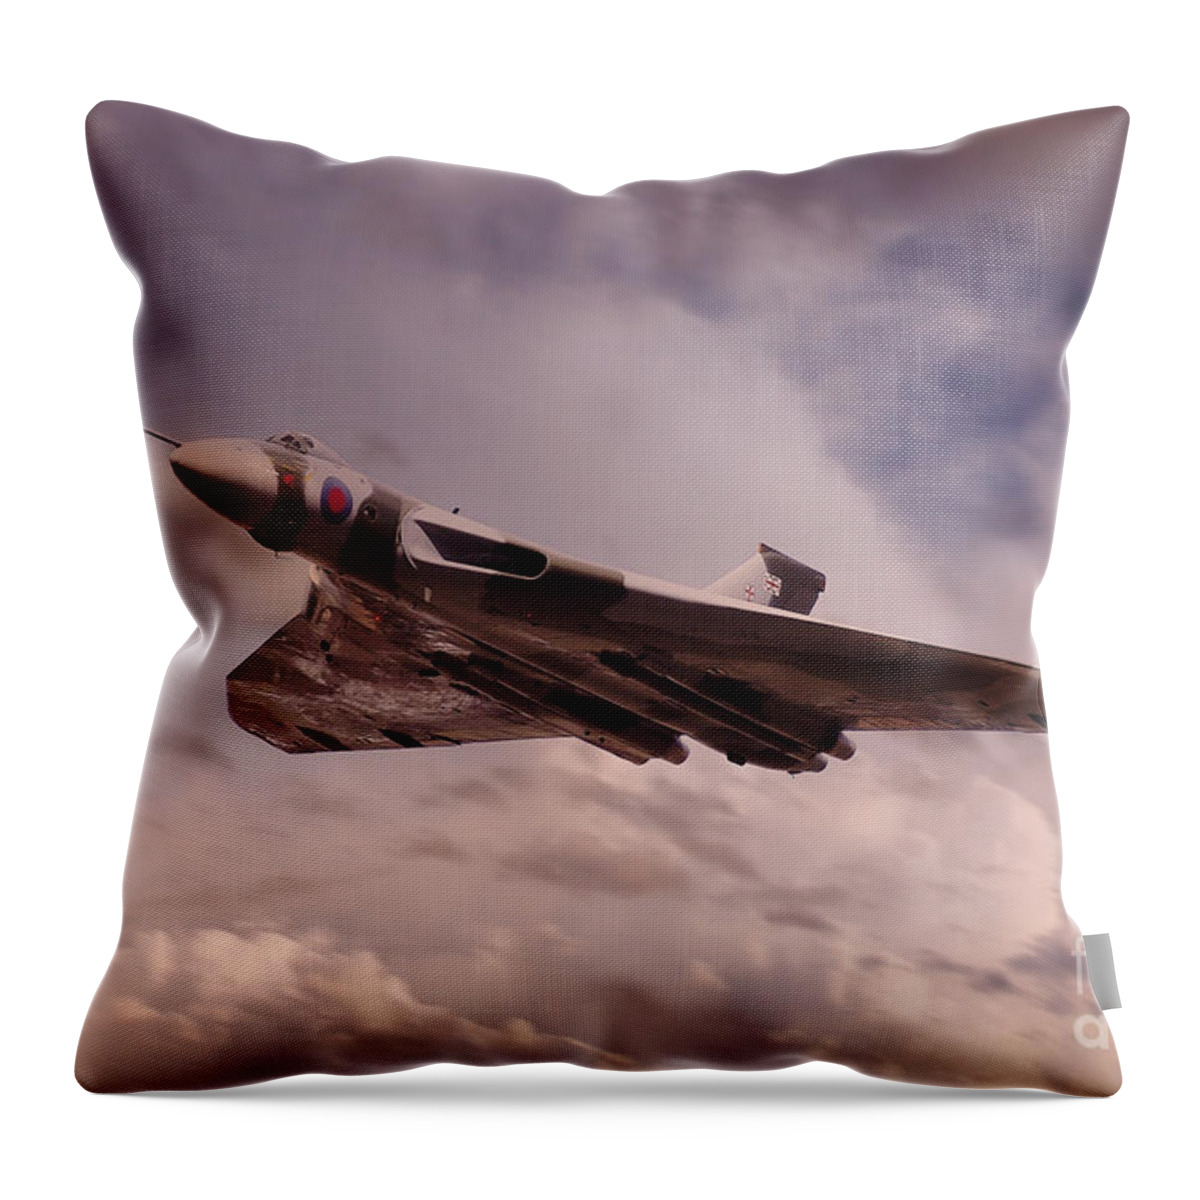 Vulcan Art Throw Pillow featuring the digital art The Vulcan by Airpower Art